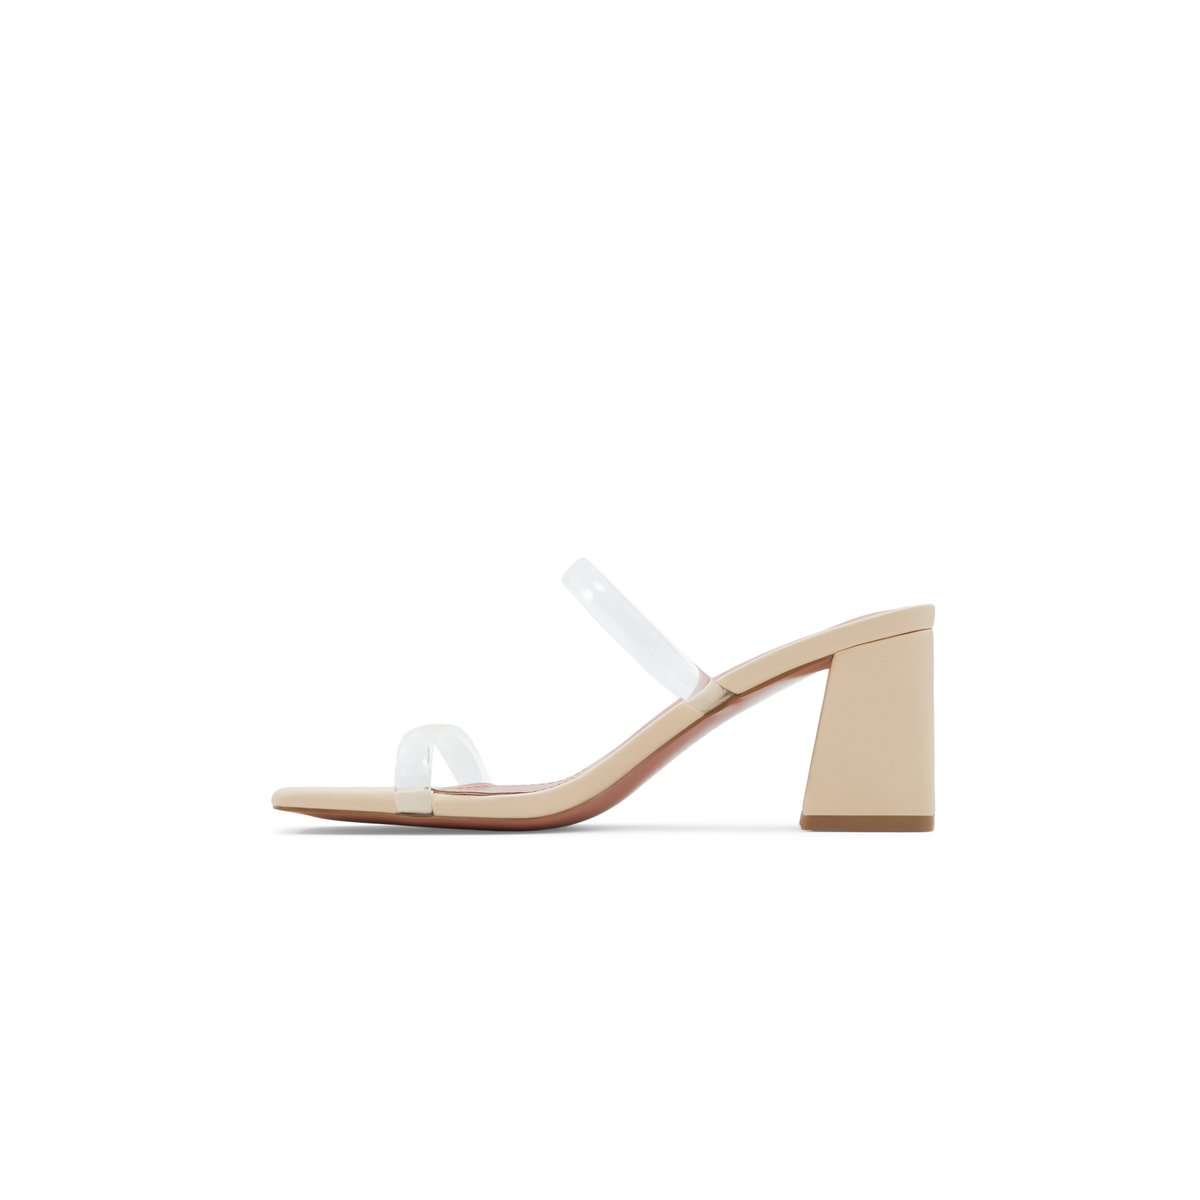 Kaiaa / Heeled Sandals Women Shoes - Light Beige - CALL IT SPRING KSA